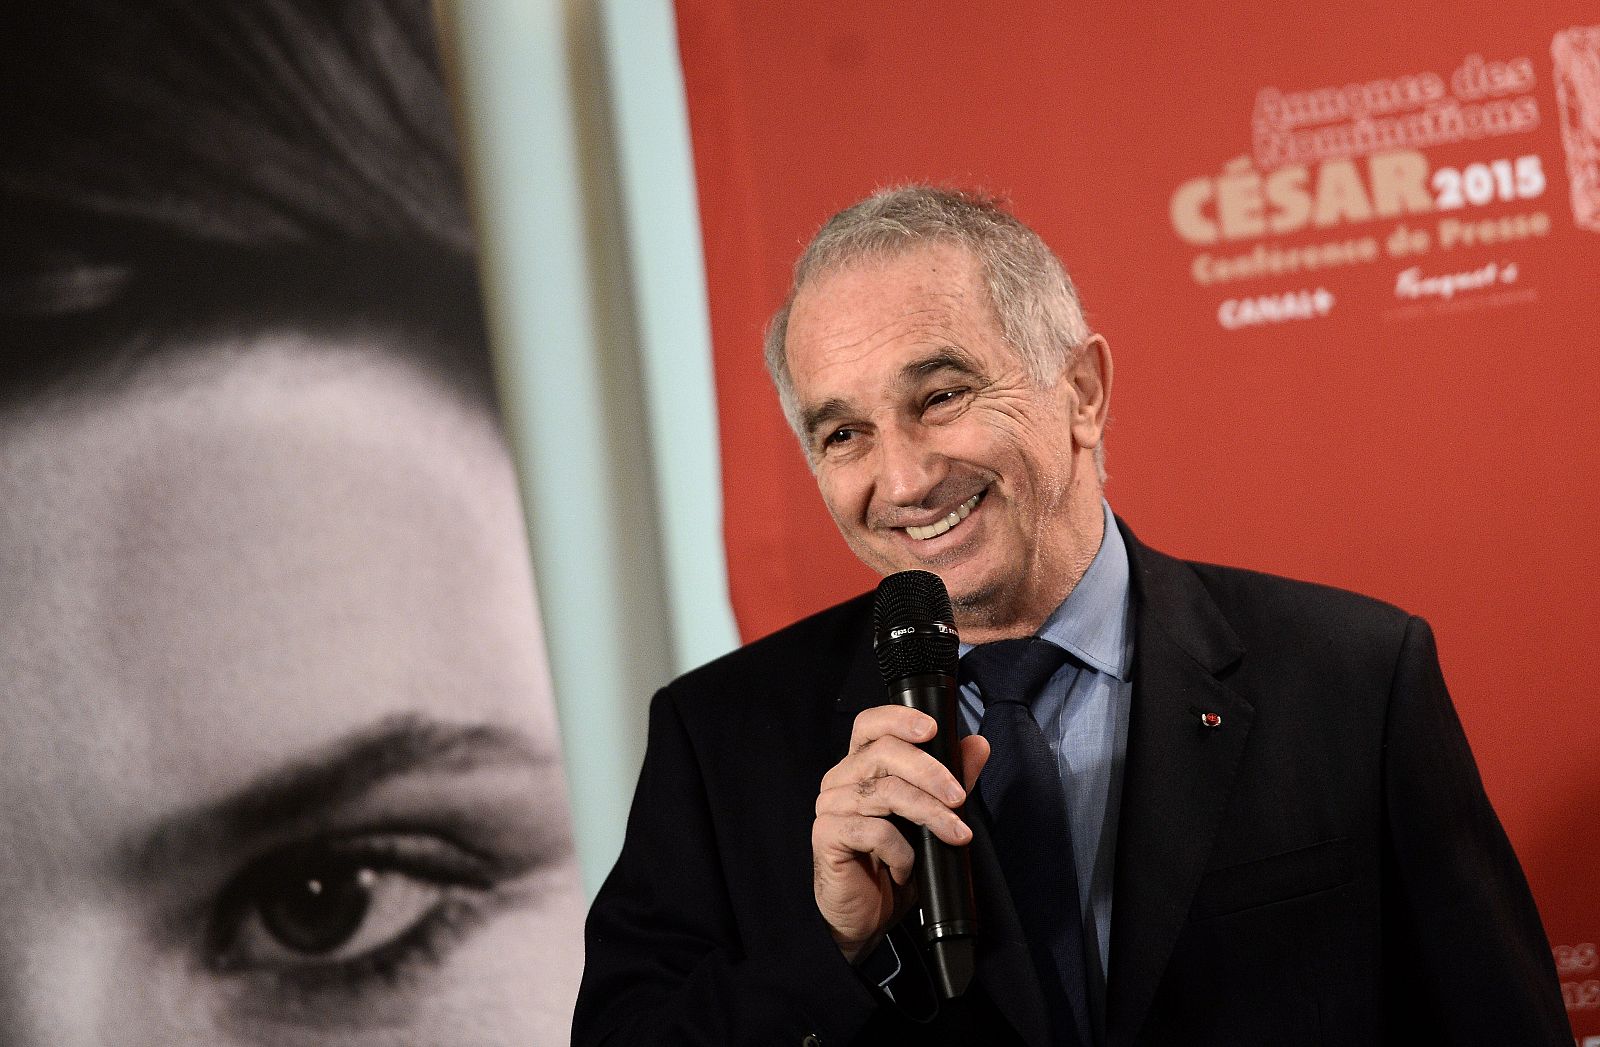 El presidente de la Academia César del cine francés Alain Terzian anuncia los nominados